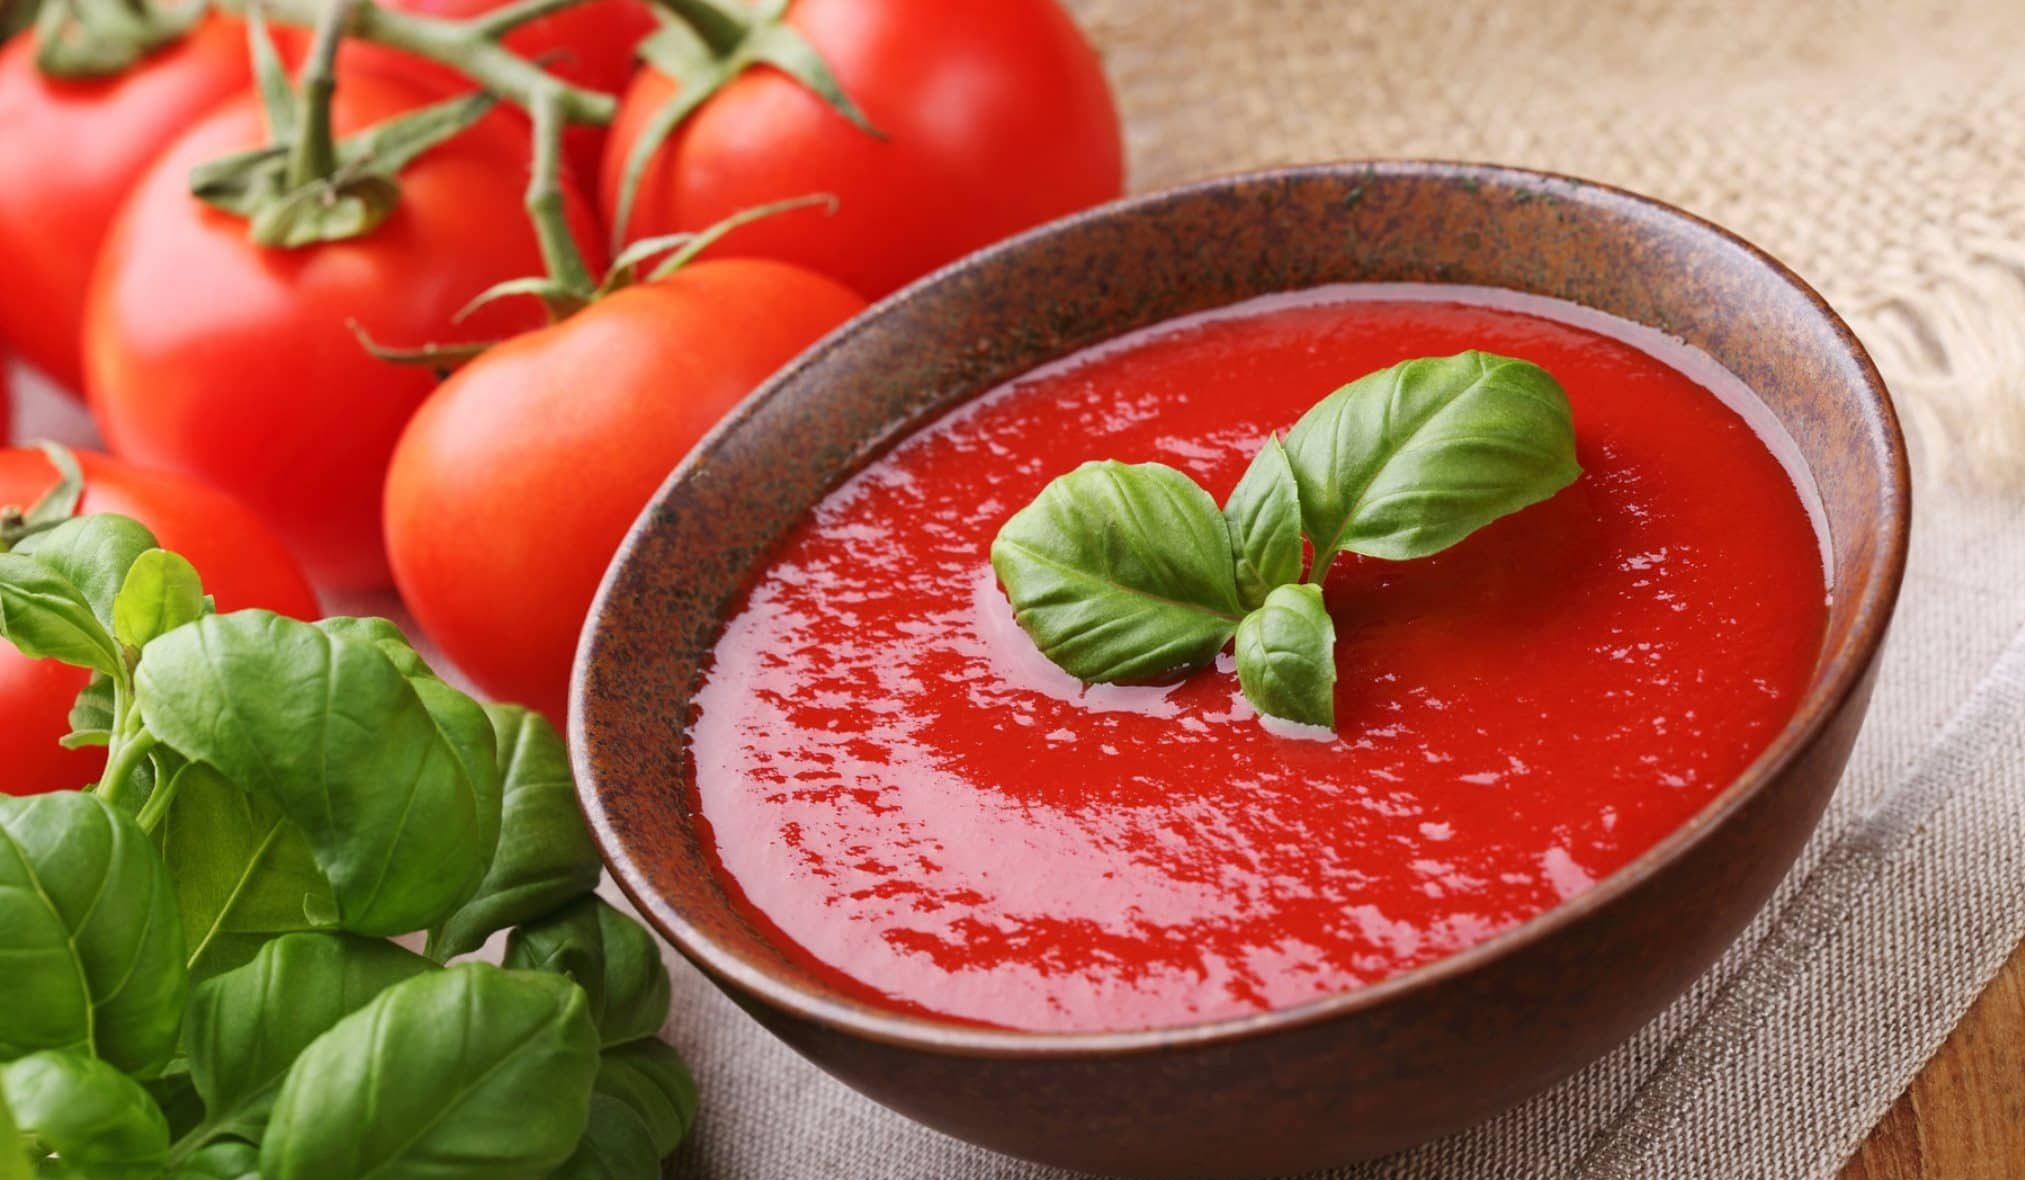 How to make tomato puree